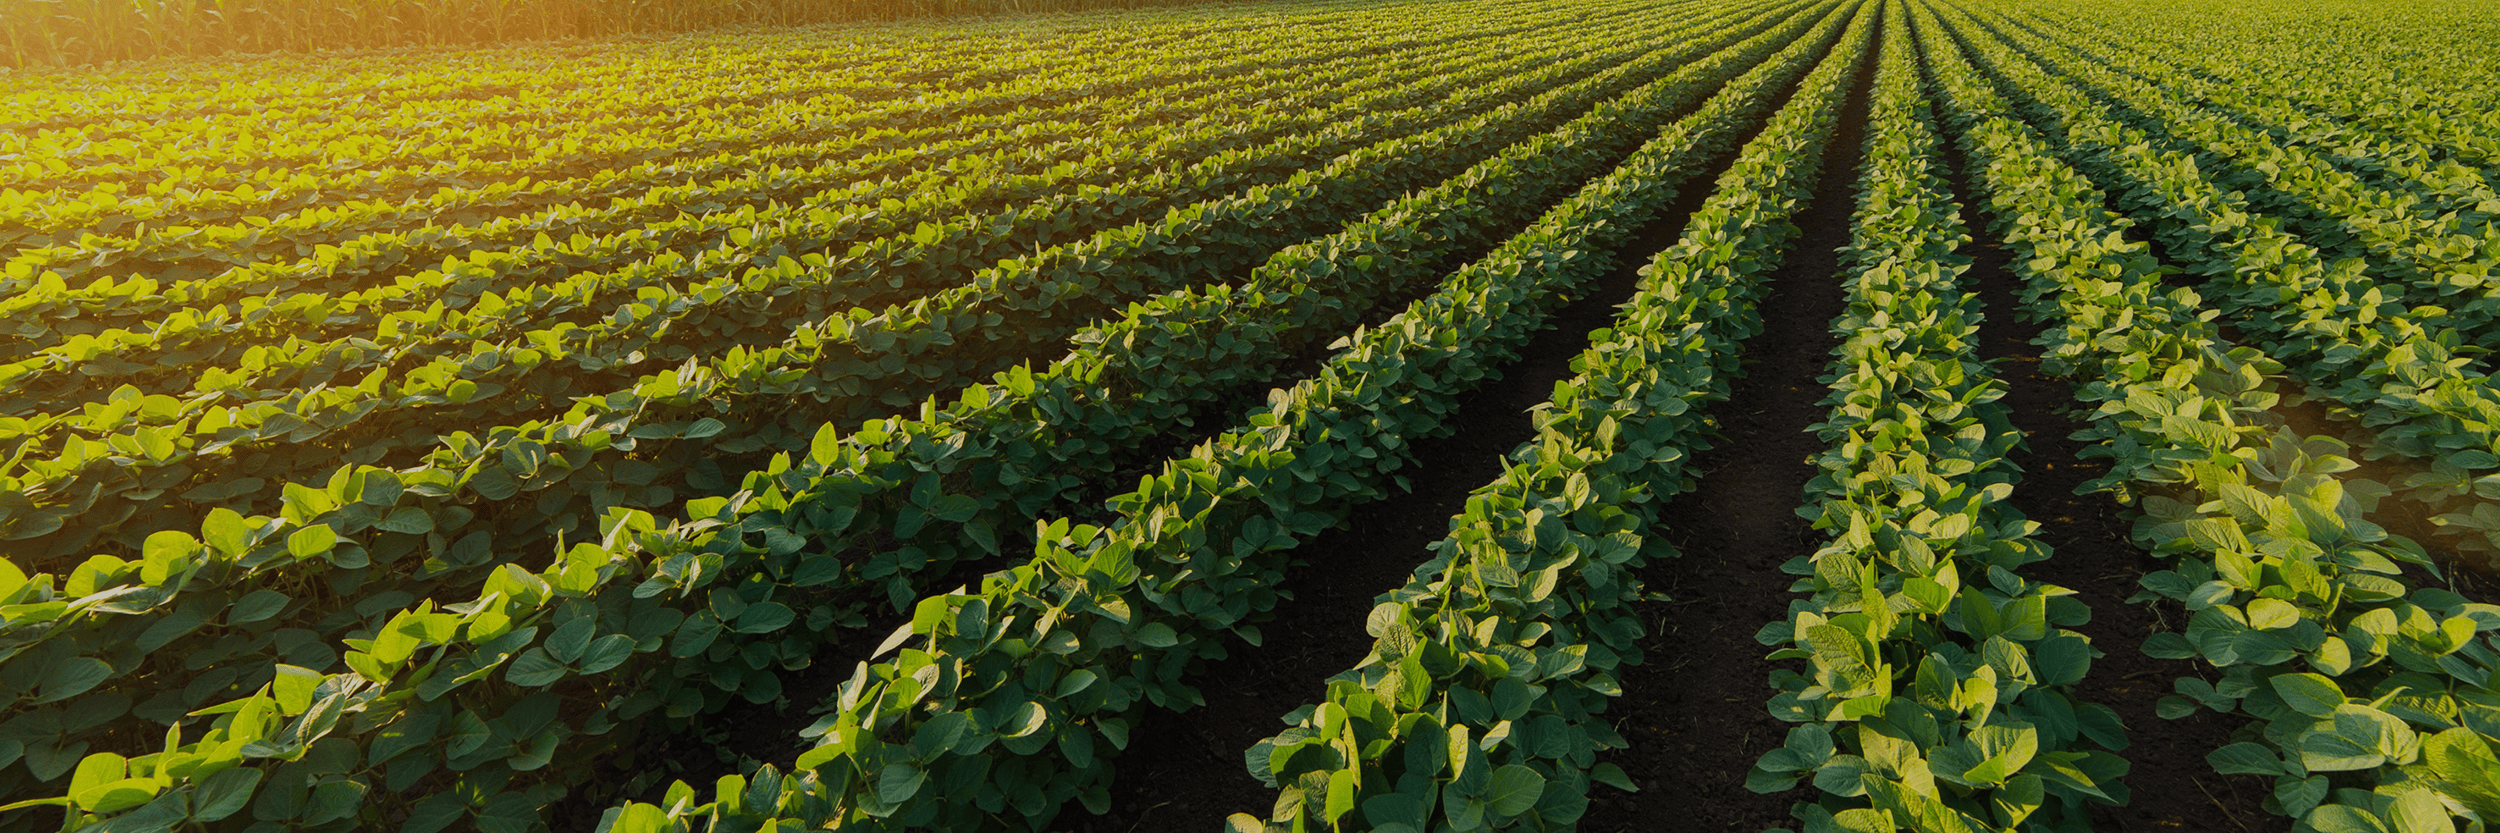 soybean field_Midwest